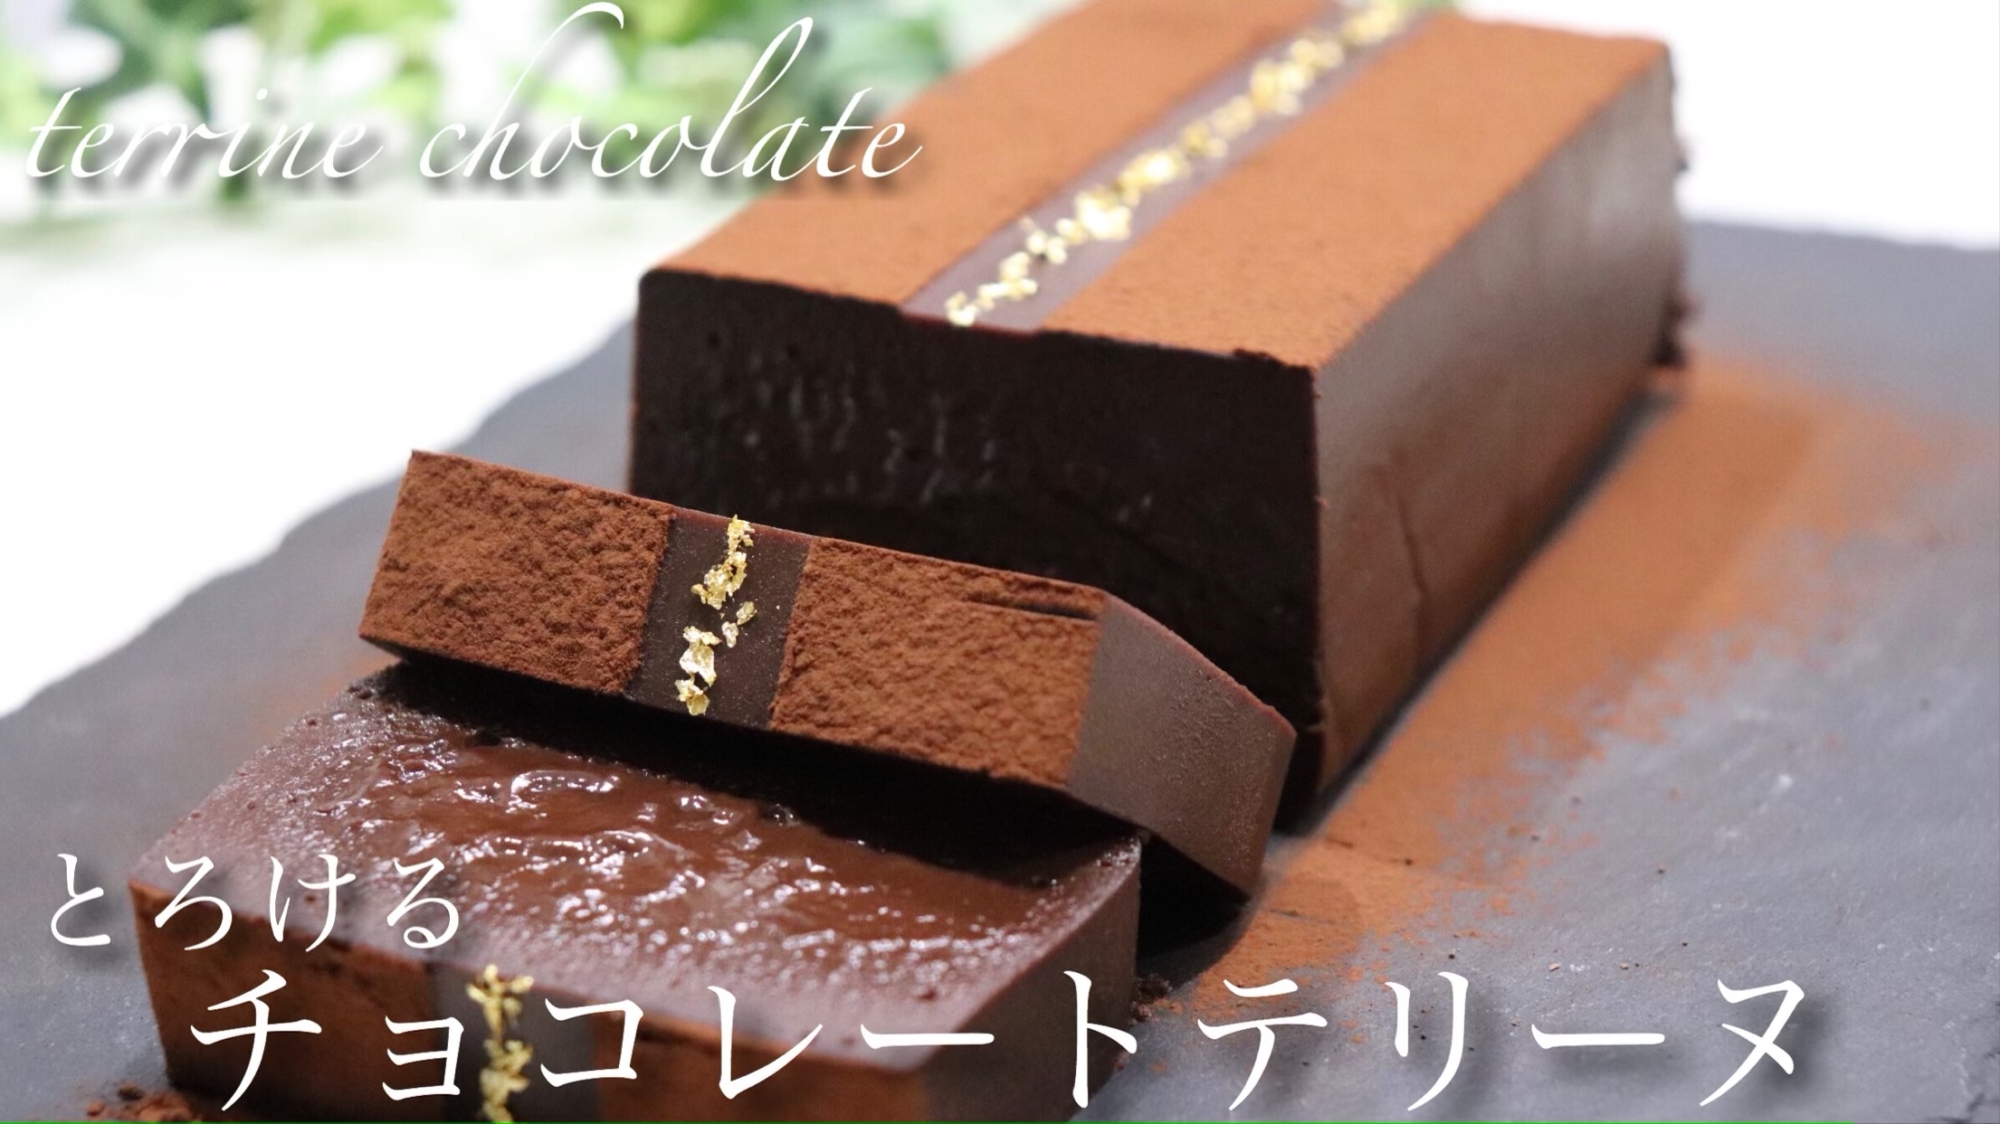 グルテンフリーのチョコレートテリーヌ